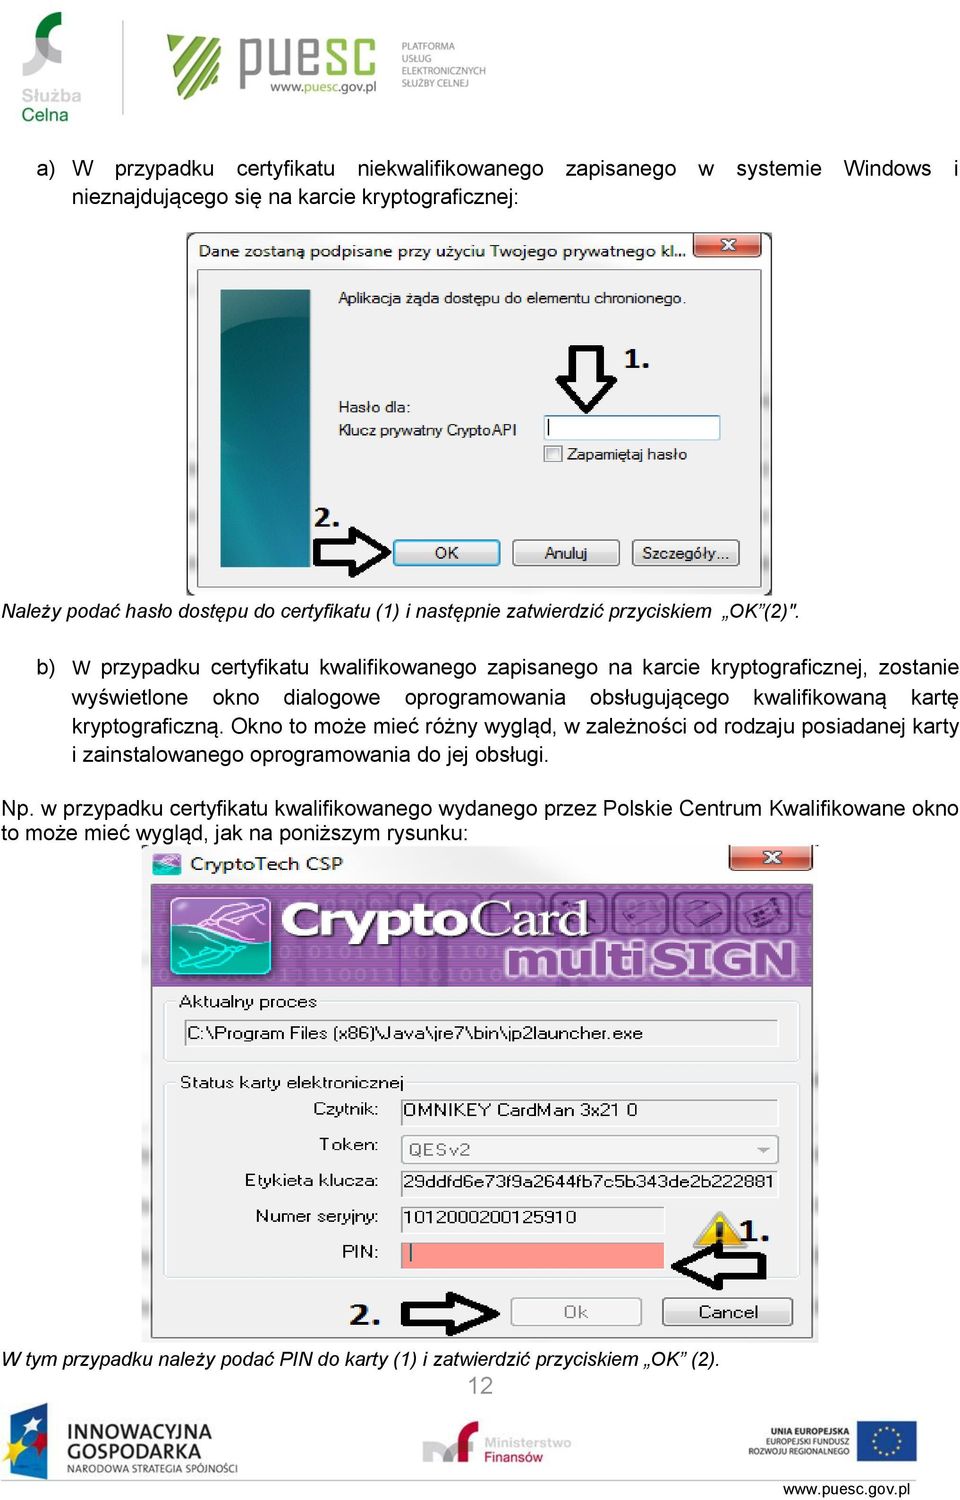 b) W przypadku certyfikatu kwalifikowanego zapisanego na karcie kryptograficznej, zostanie wyświetlone okno dialogowe oprogramowania obsługującego kwalifikowaną kartę kryptograficzną.